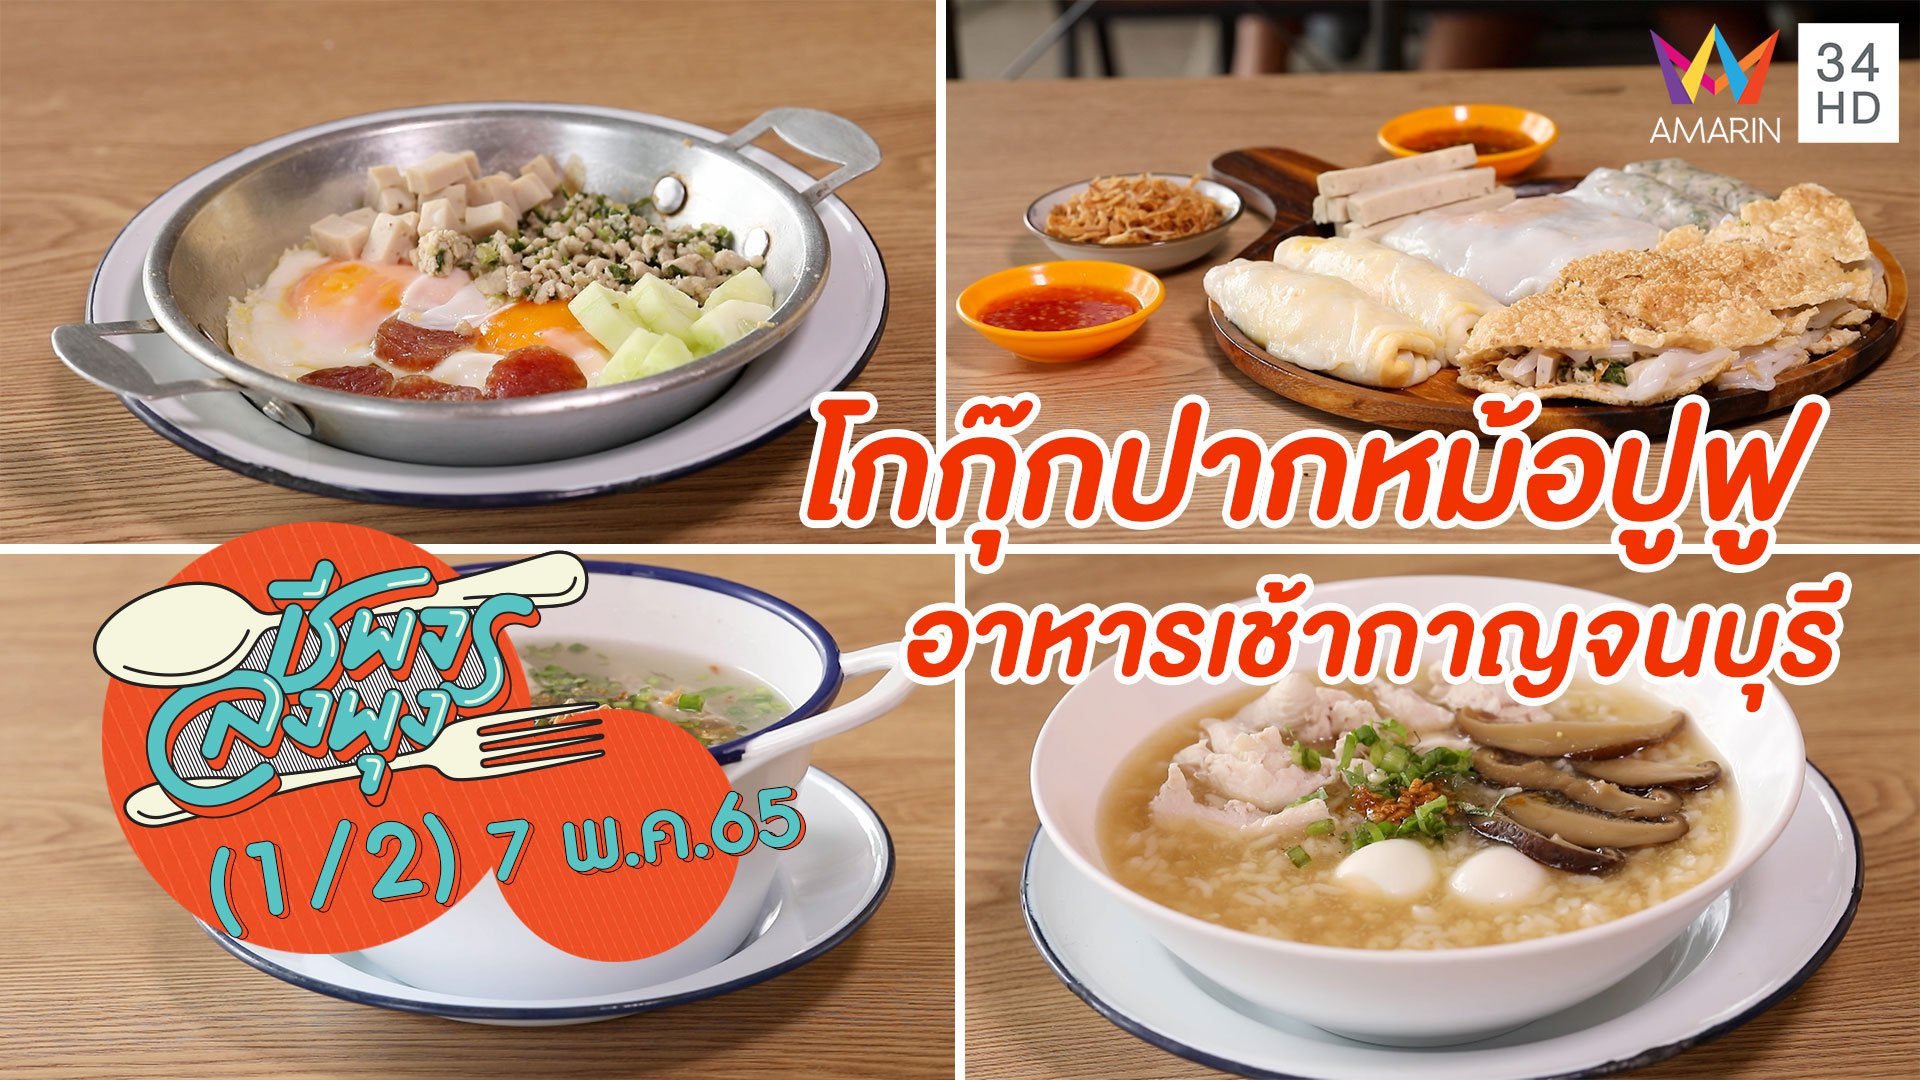 อาหารเช้าสไตล์เวียดนาม @ ร้านโกกุ๊กปากหม้อปูฟู อาหารเช้ากาญจนบุรี | ชีพจรลงพุง | 7 พ.ค. 65 (1/2) | AMARIN TVHD34